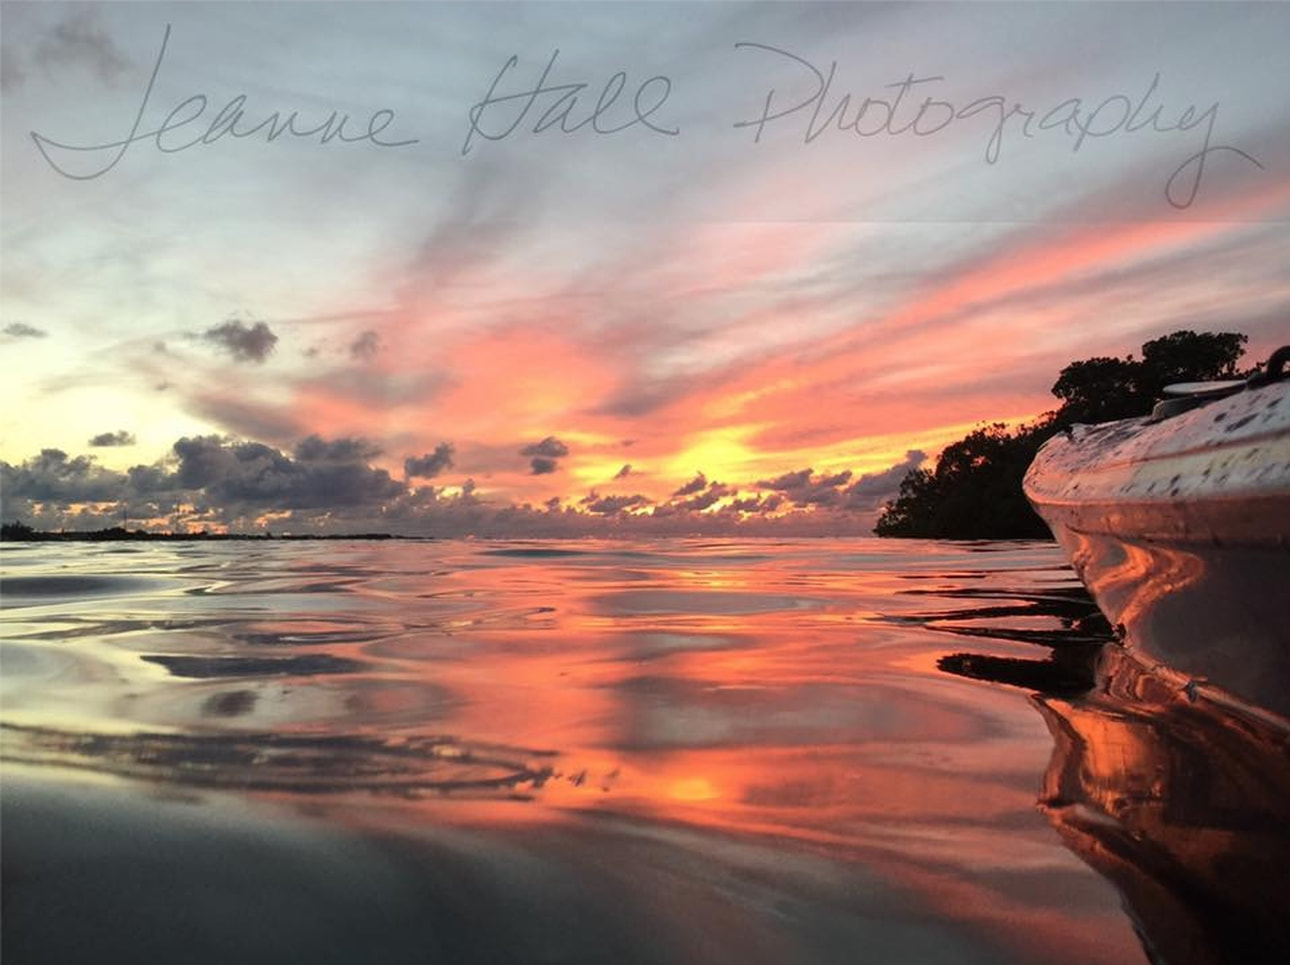 Florida Keys photography